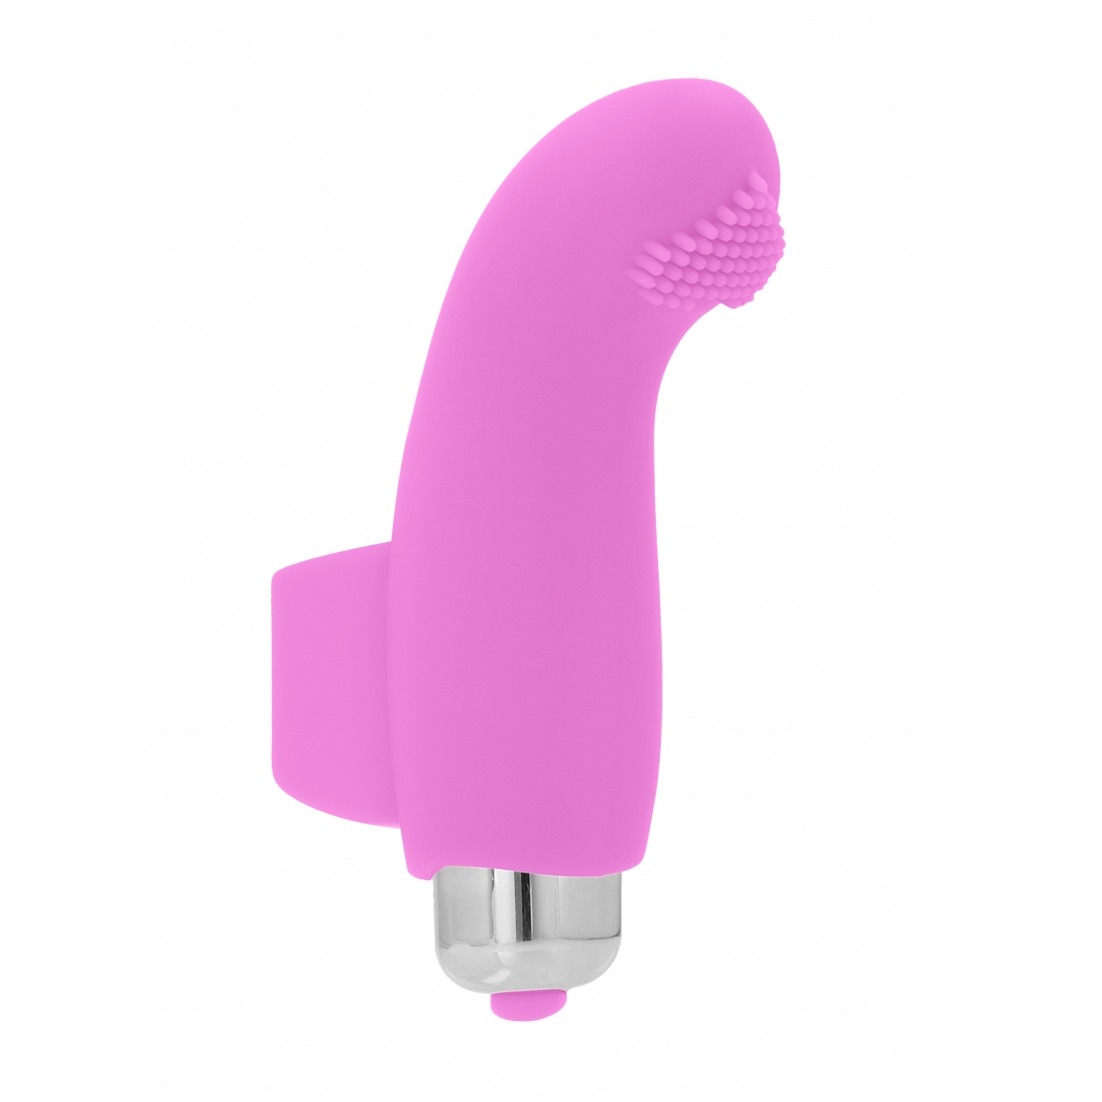 BASILE Finger vibrator - Pink